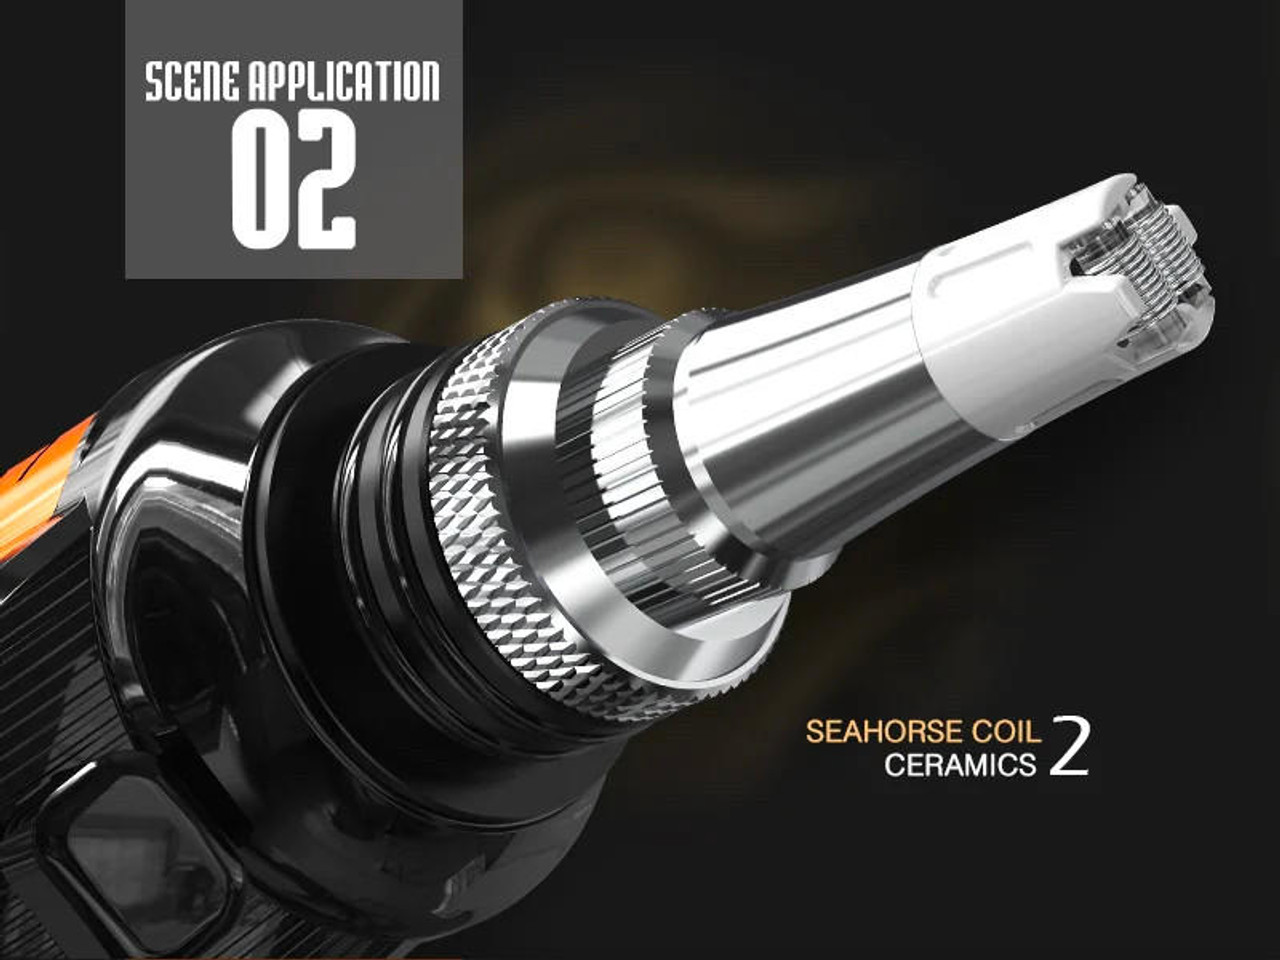 Lookah Seahorse X Neon Green 3 in 1: E-Nectar Collector, Wax Pen, and  Portable E-